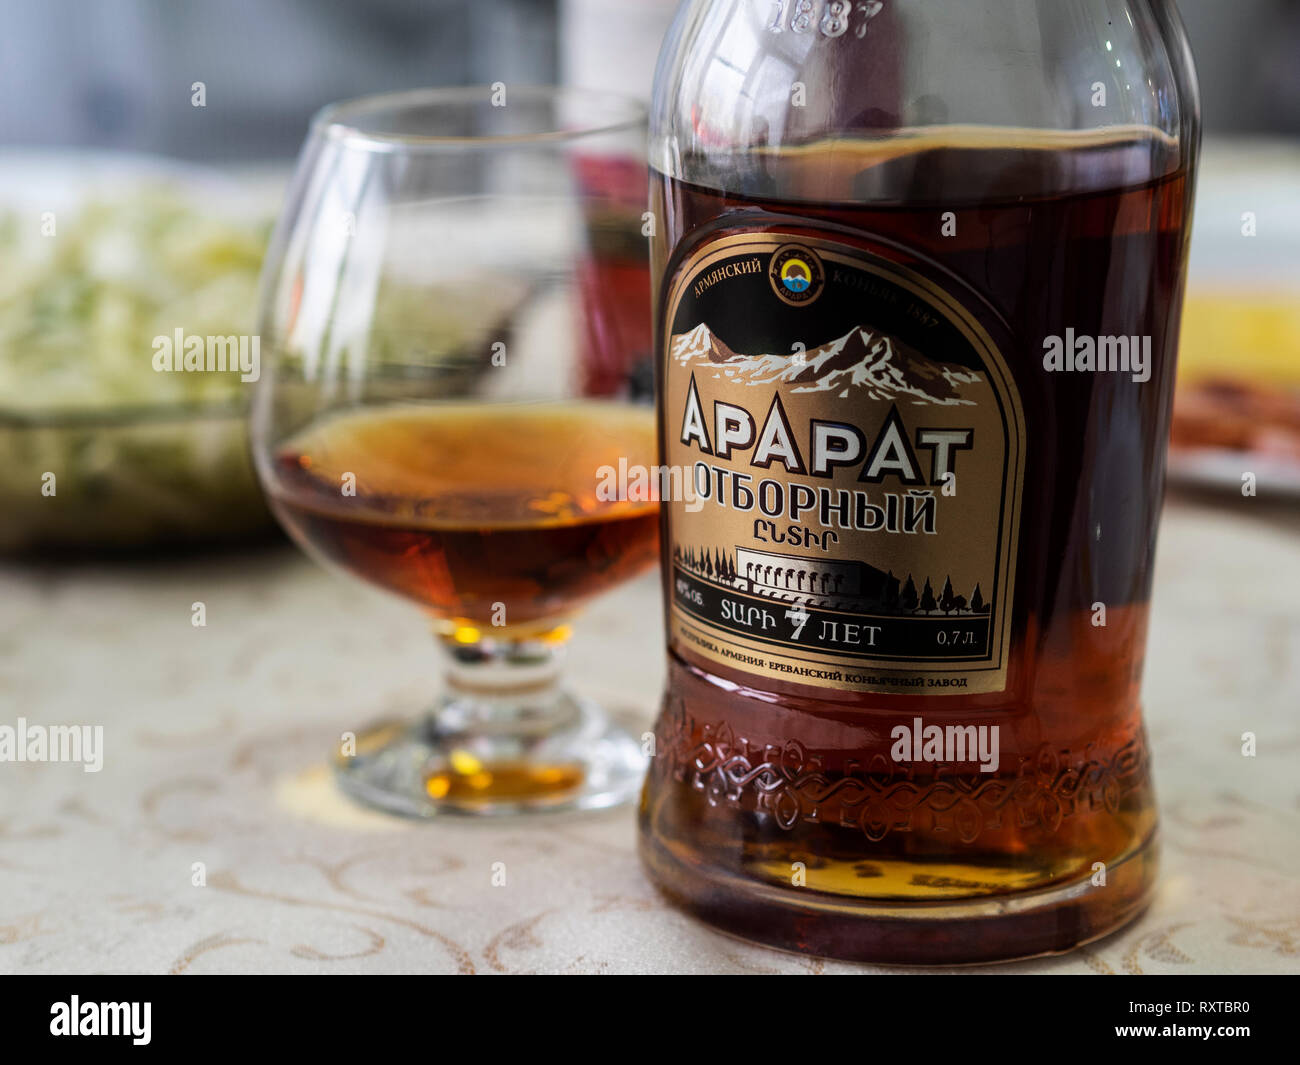 Bouteille de cognac arménien Ararat célèbre, spécial 7 ans Photo Stock -  Alamy